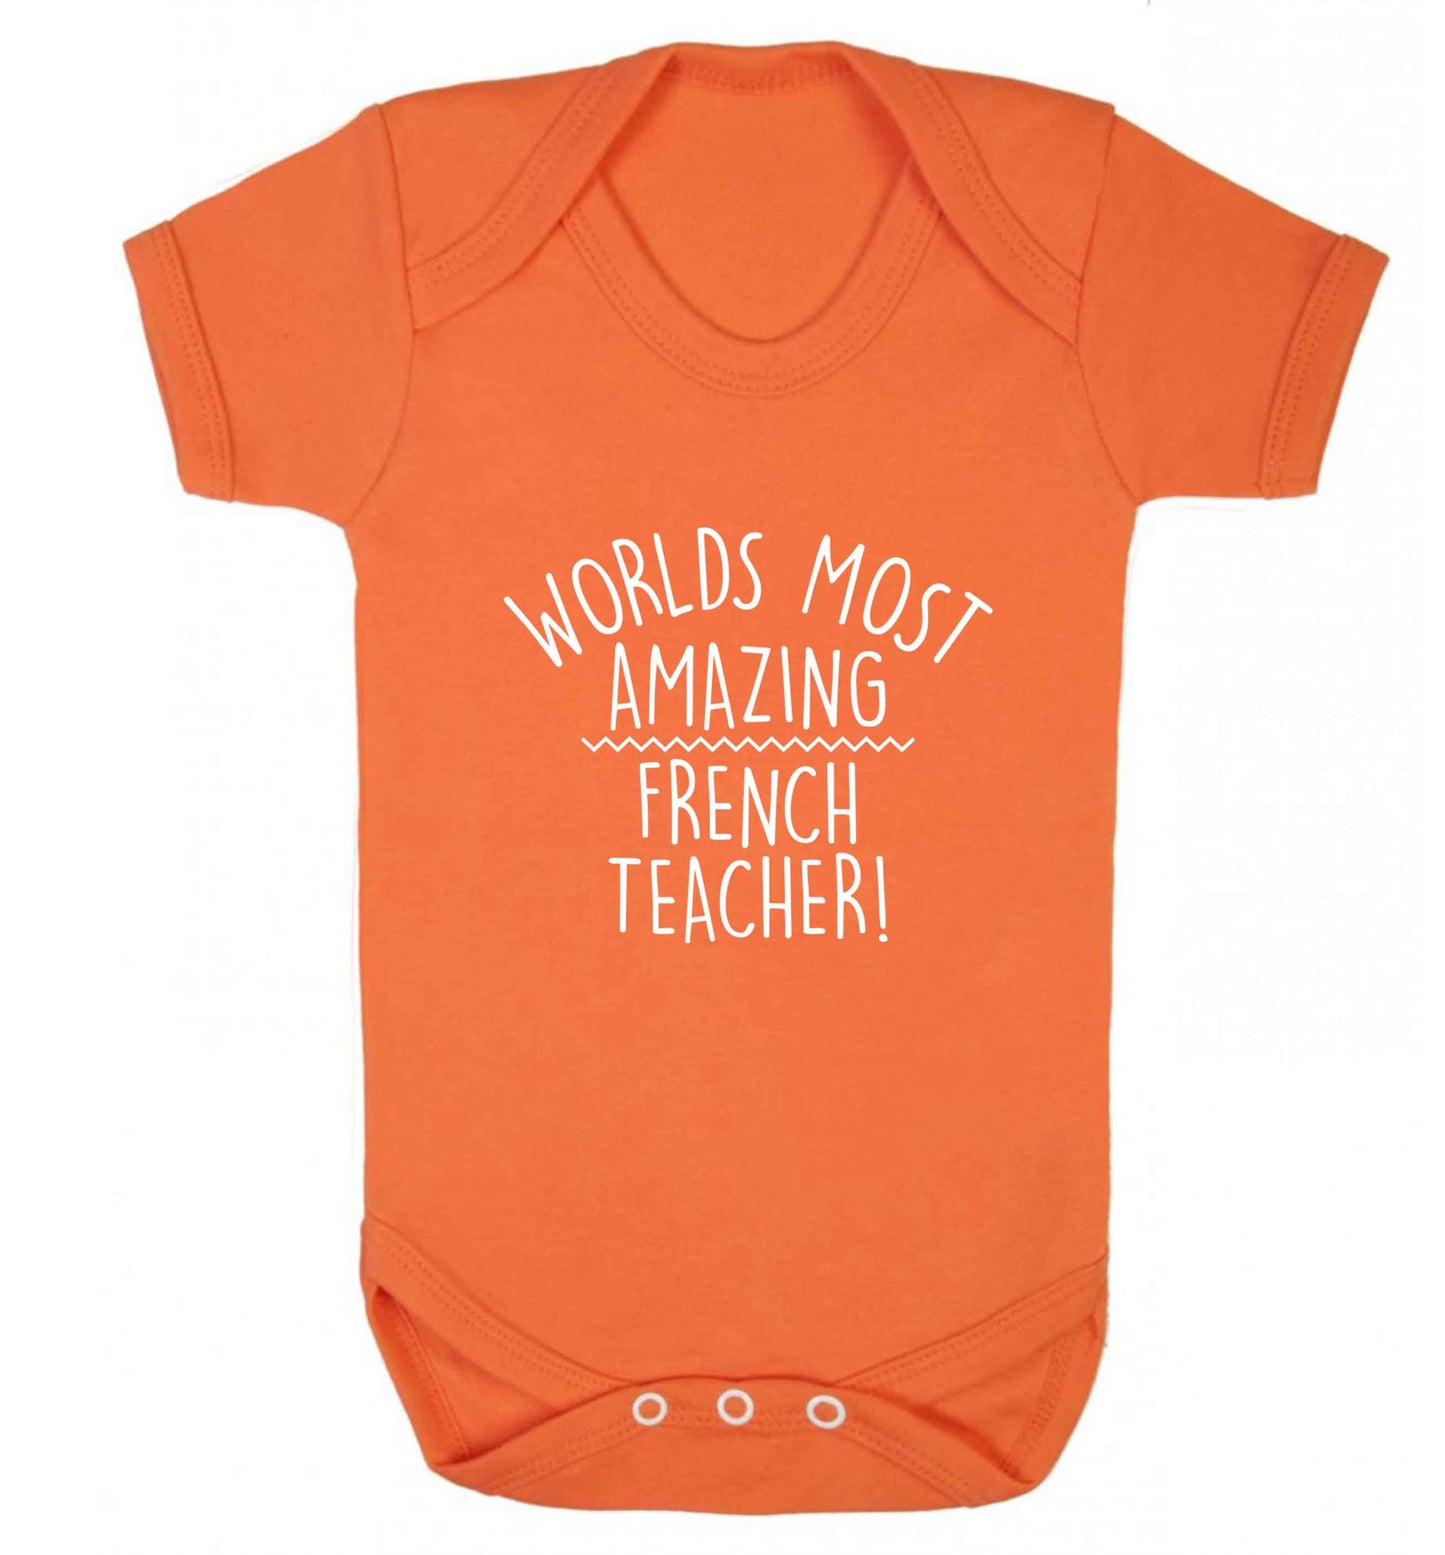 Worlds most amazing French teacher baby vest orange 18-24 months